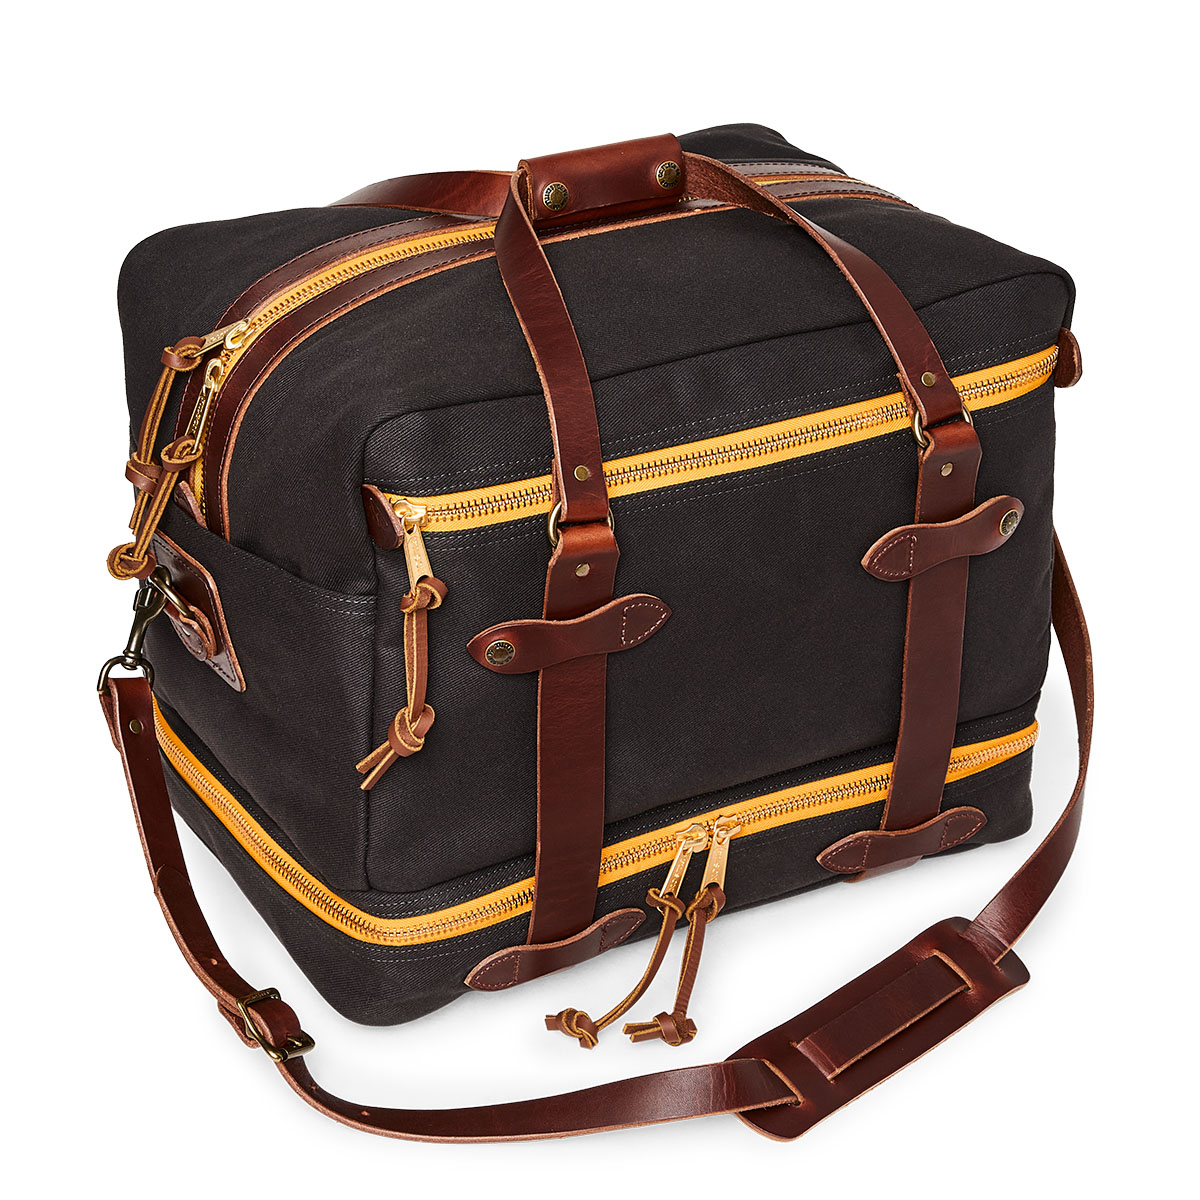 Filson Traveller Outfitter Bag Stapleton Cinder, hergestellt aus der charakteristischen wasserfesten Rugged Twill-Baumwolle, schützt diese Reisetasche Kleidung und Ausrüstung mit einem separaten Fach für schmutzige Ausrüstung.